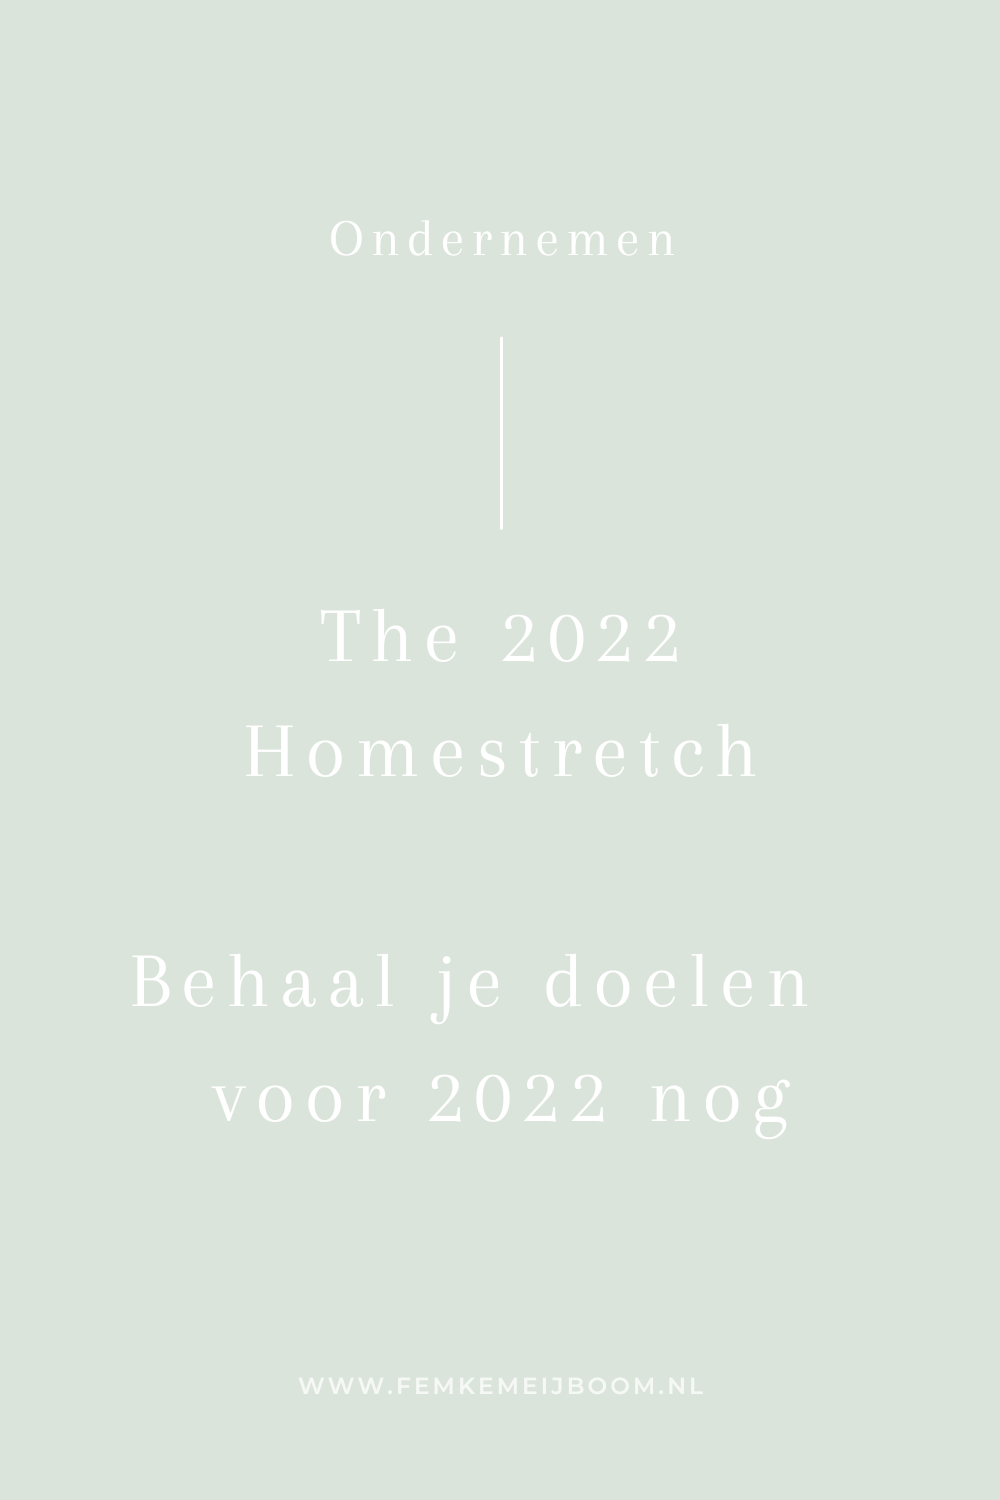 The 2022 Homestretch – Behaal al je doelen nog